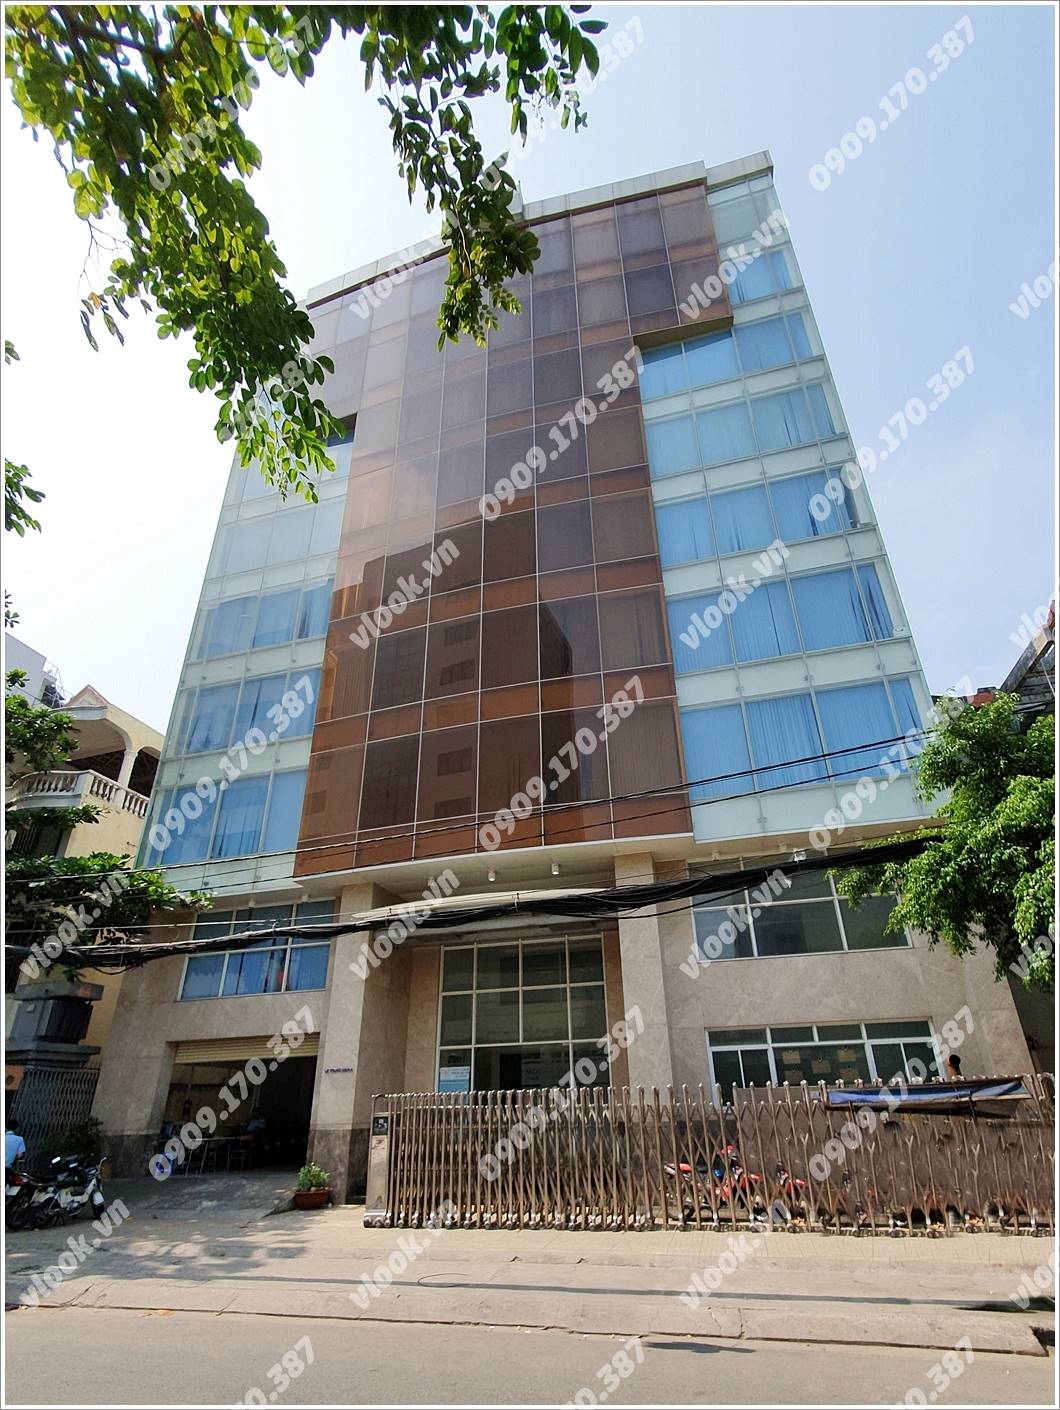 Mặt trước cao ốc cho thuê văn phòng Phù Đổng Building, Lê Trung Nghĩa, Quận Tân Bình, TPHCM - vlook.vn